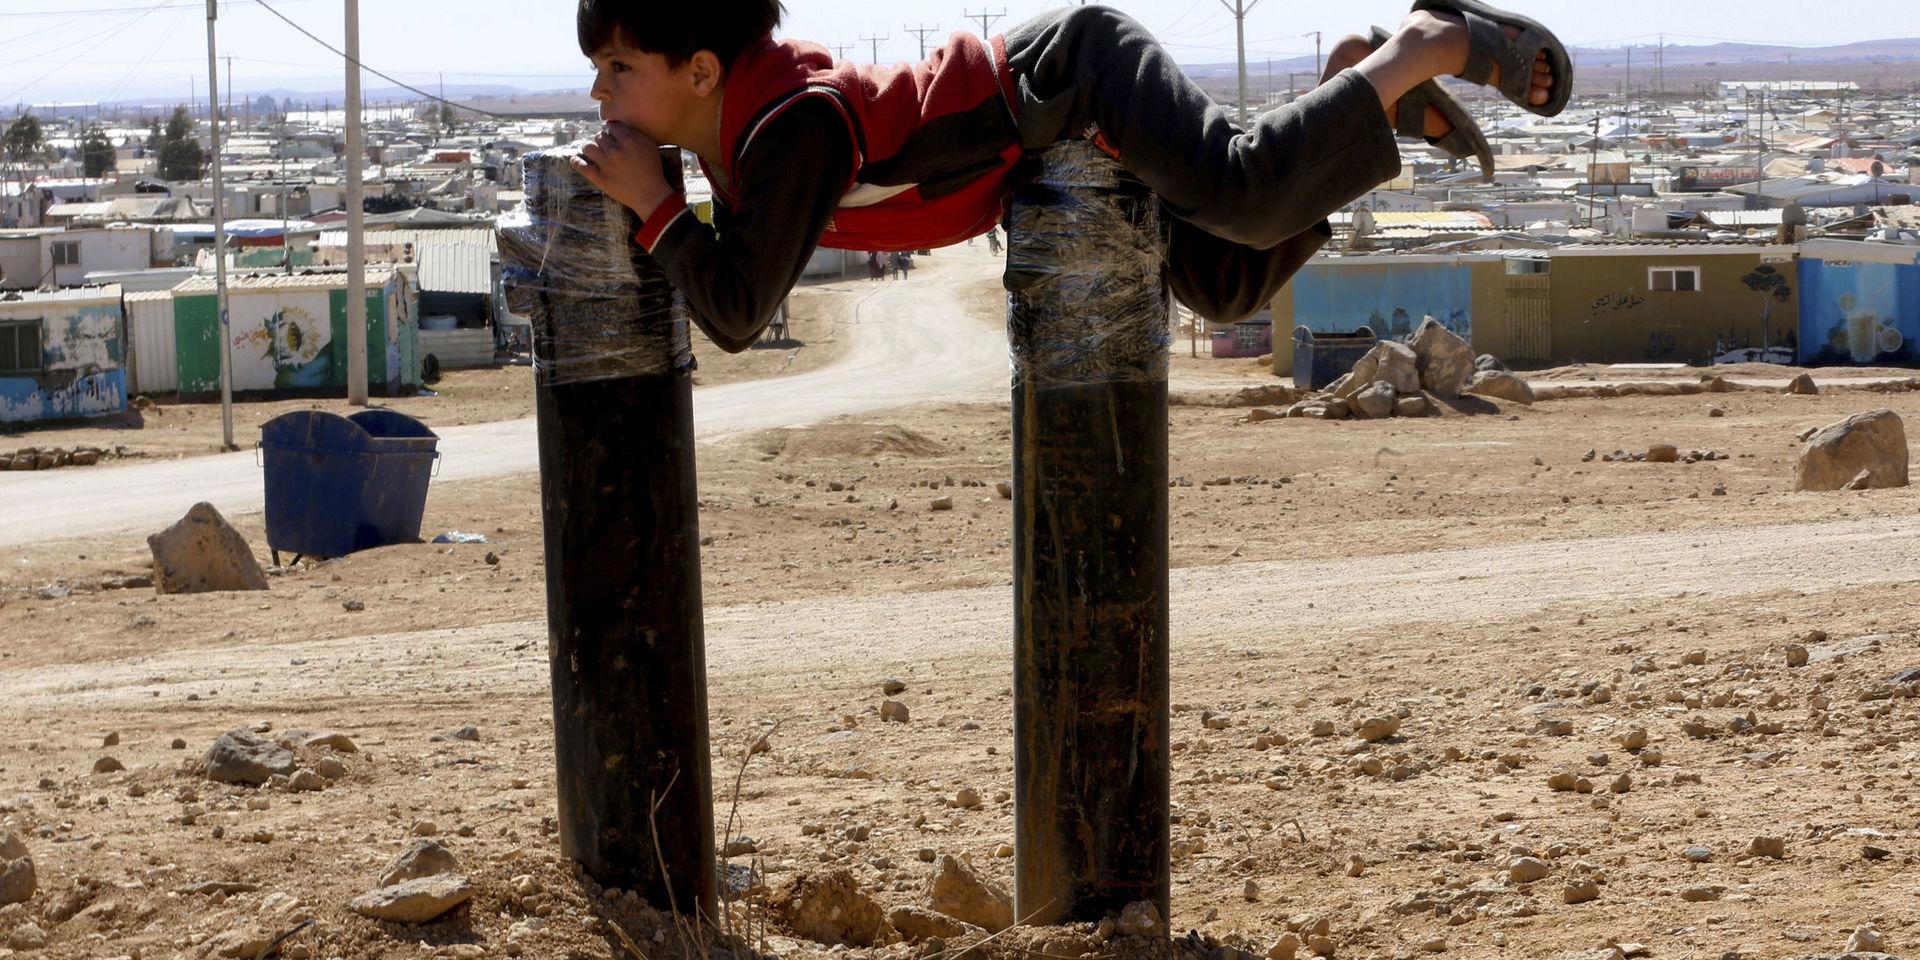 En pojke i det syriska flyktinglägret Zaatari i Jordanien. Arkivbild.